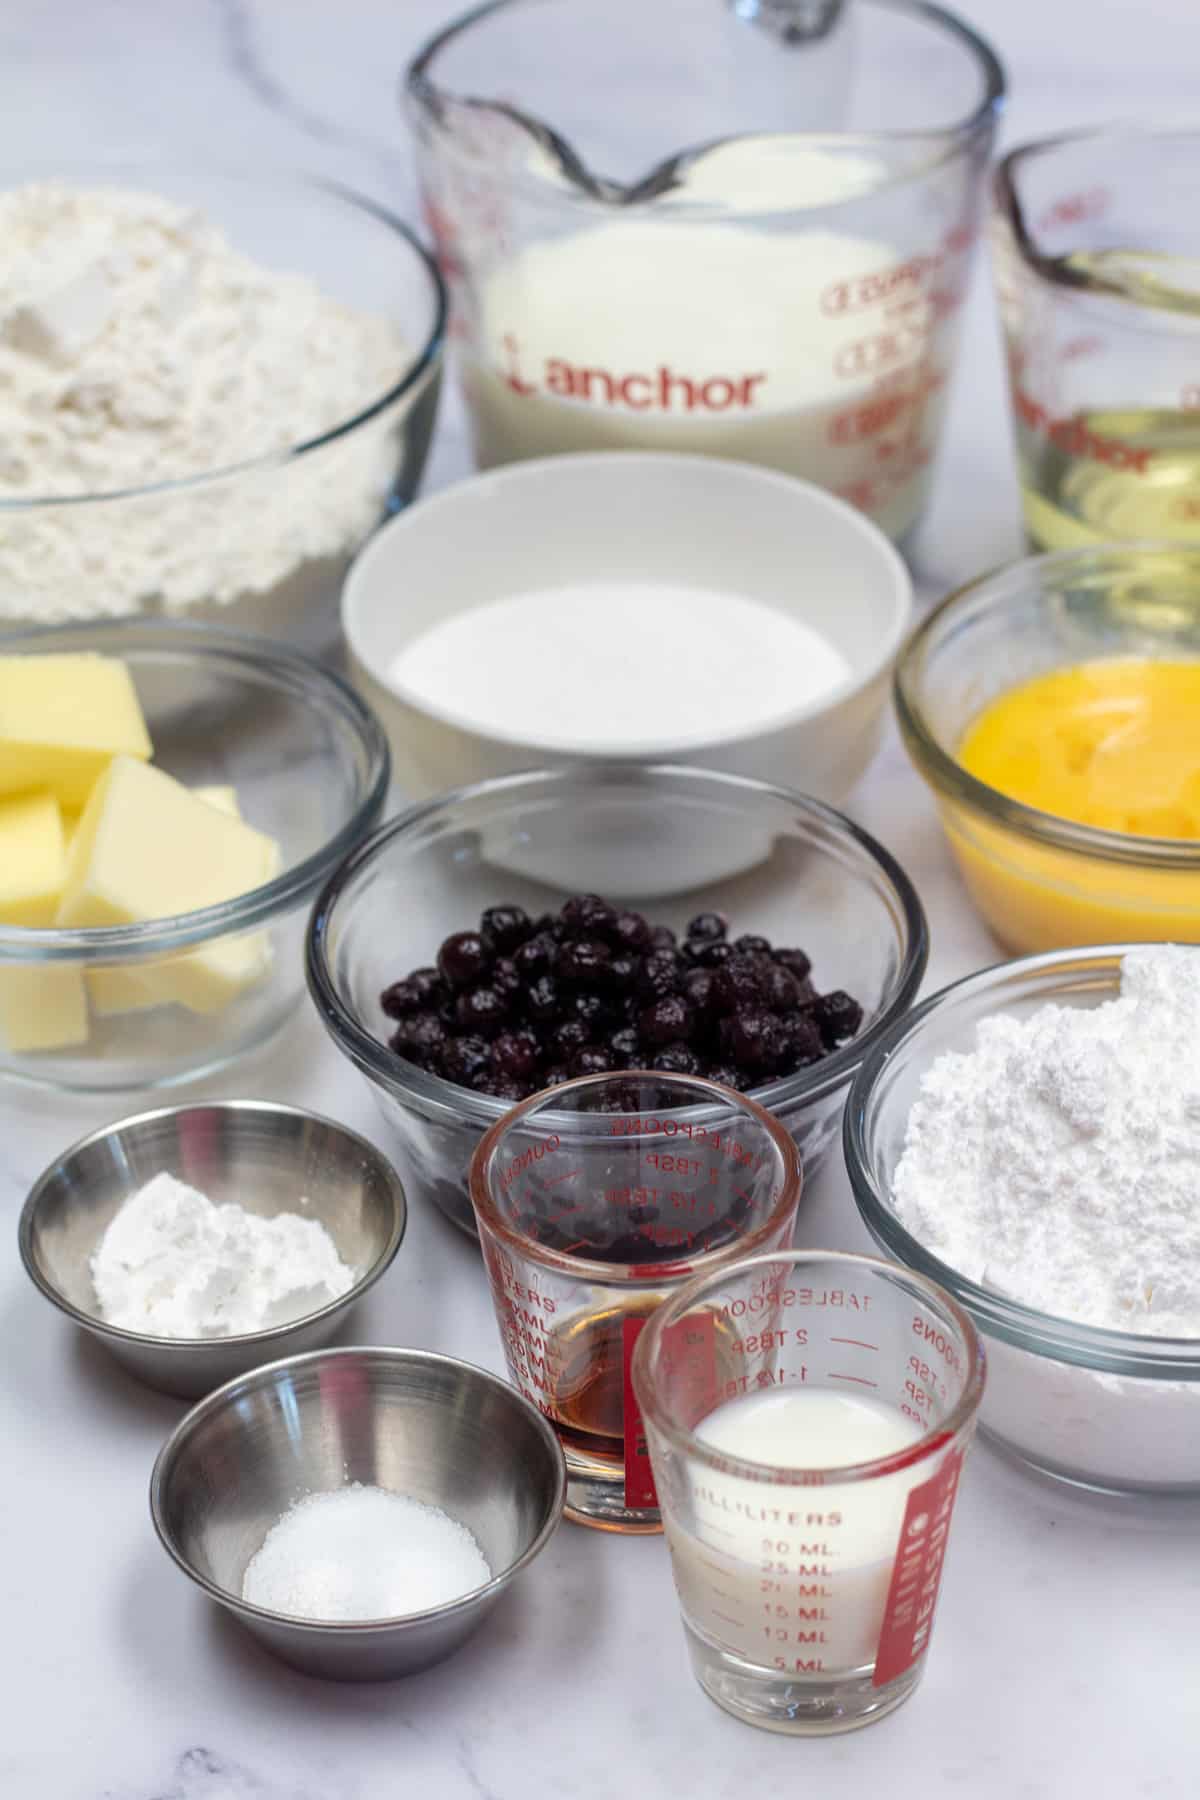 Immagine alta che mostra gli ingredienti necessari per preparare le ciambelle ai mirtilli al forno.